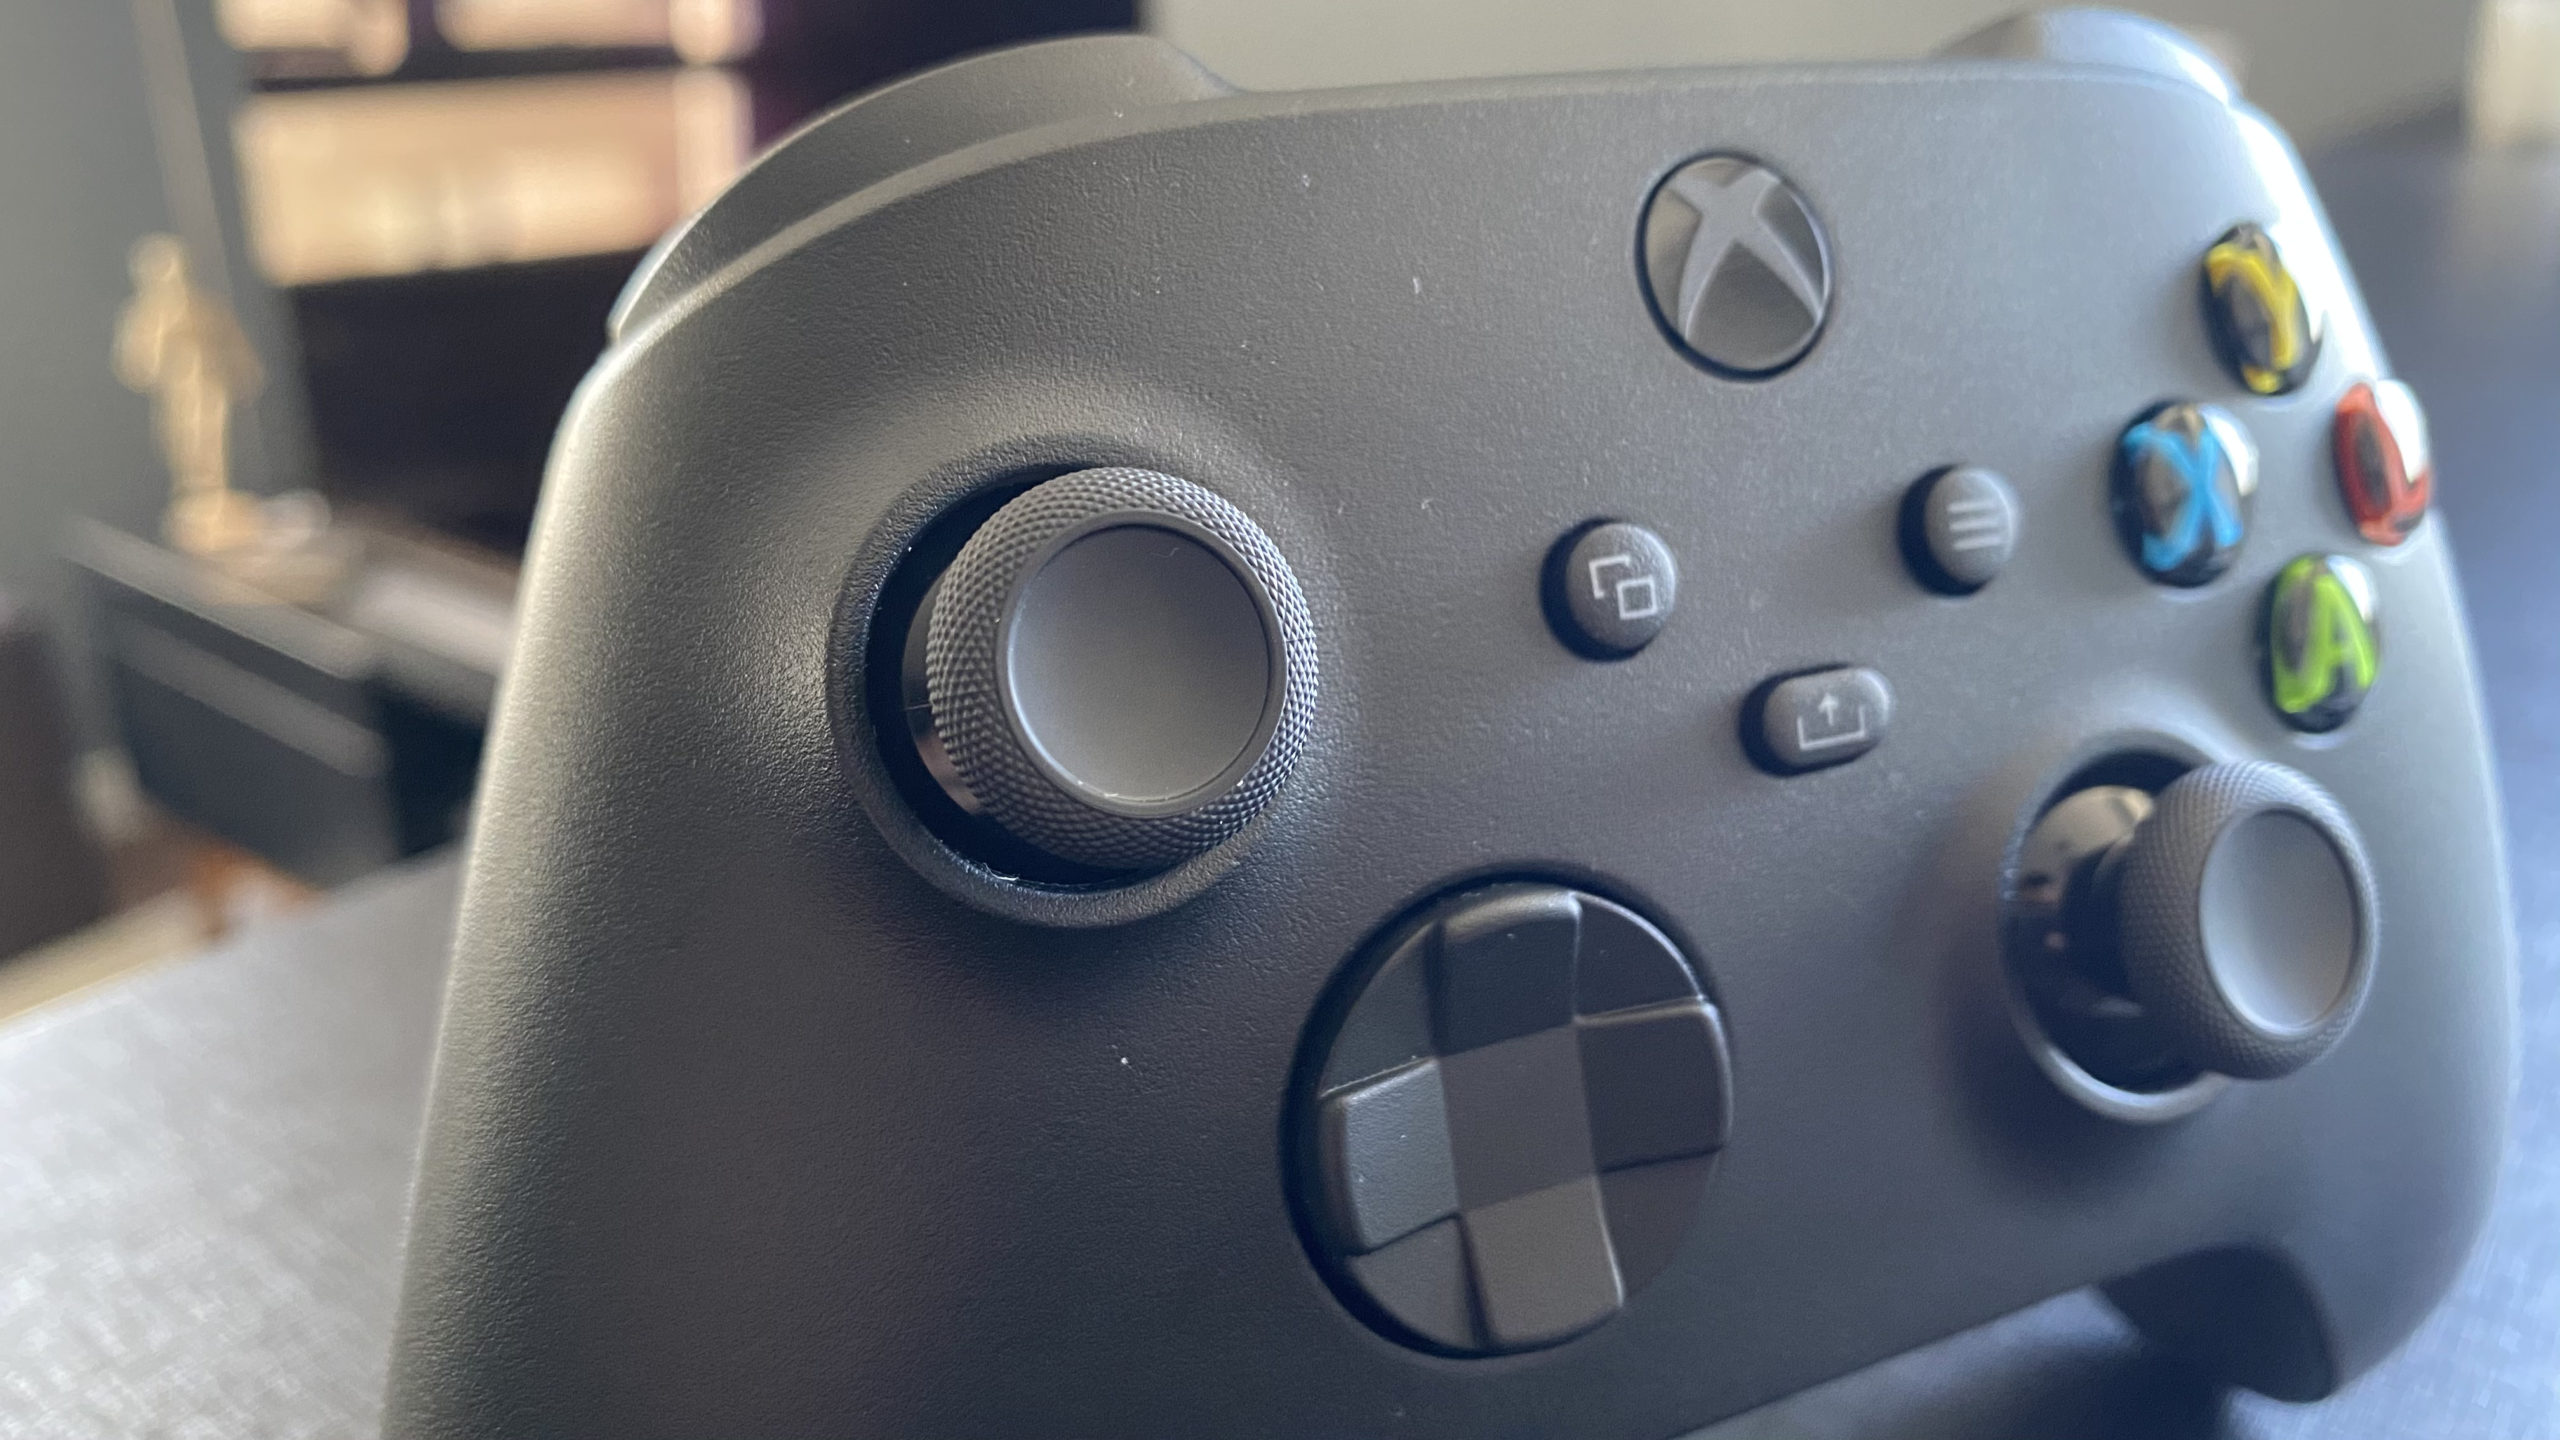 O Xbox está trabalhando com fabricantes de TV para trazer jogos em nuvem  para sua tela